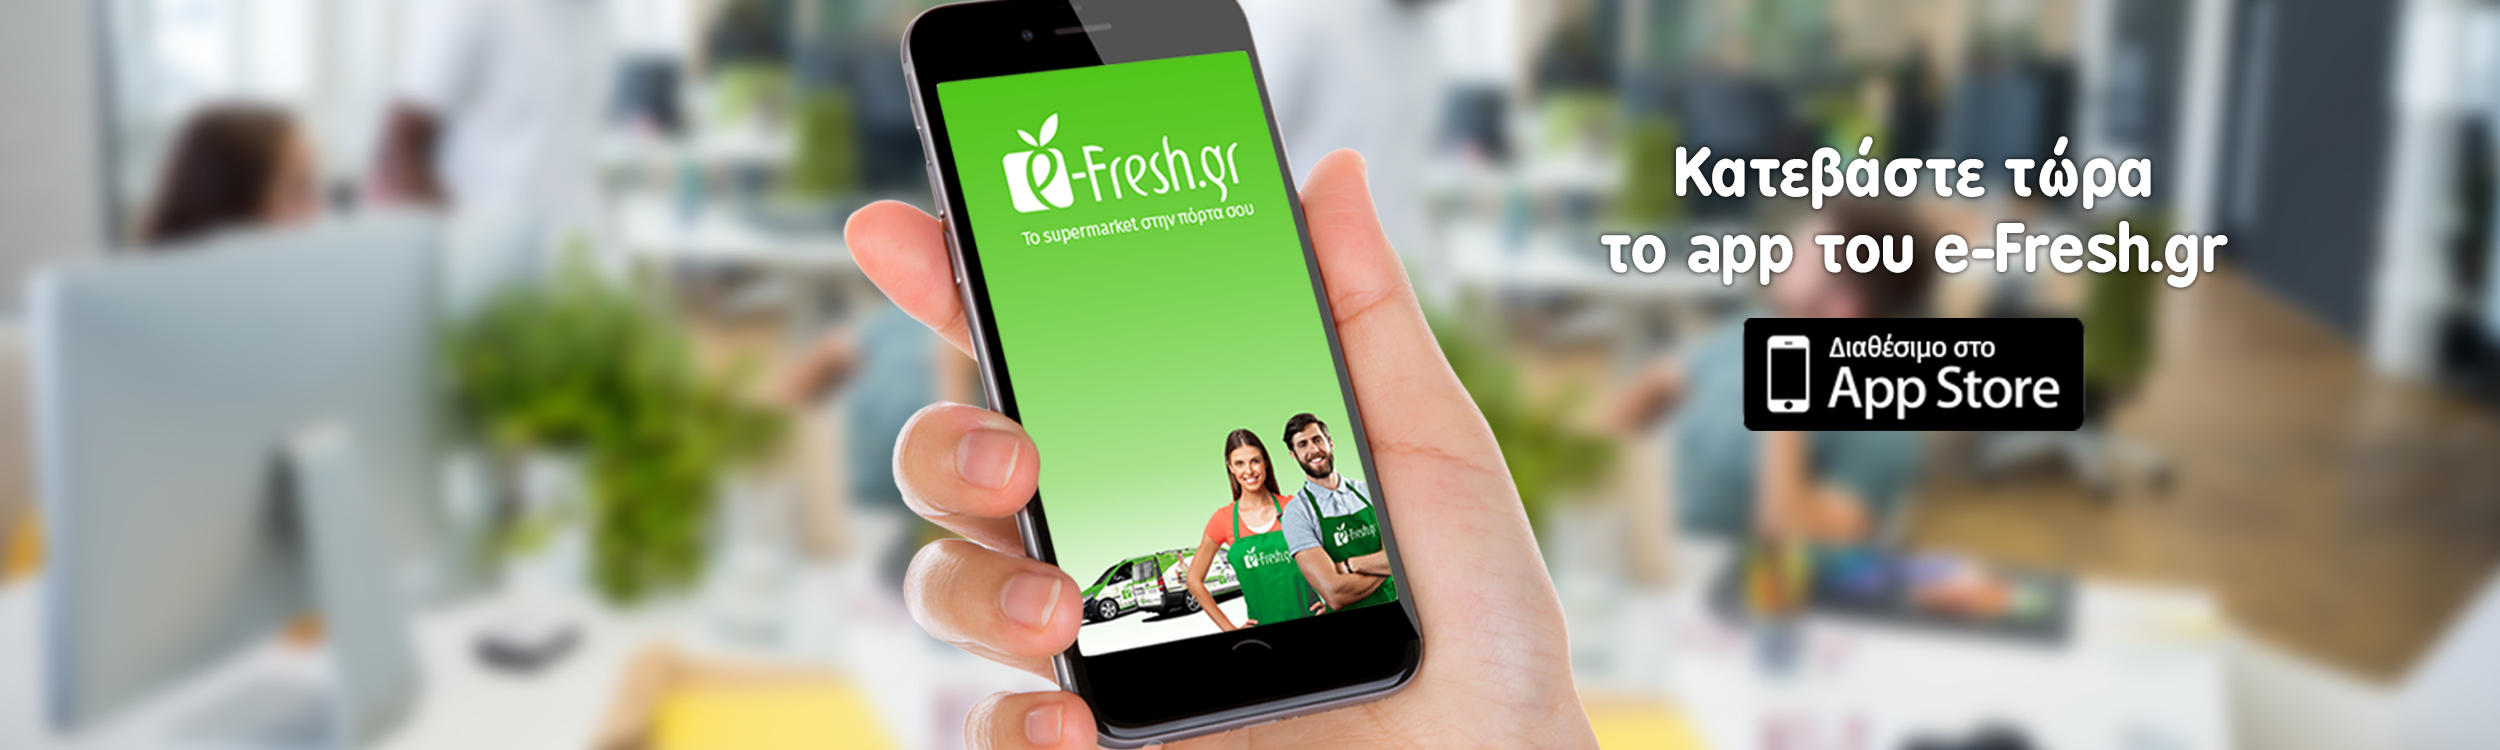 Ήρθε το application του e-Fresh.gr για Android και iOS για εύκολες αγορές από όπου κι αν βρίσκεστε